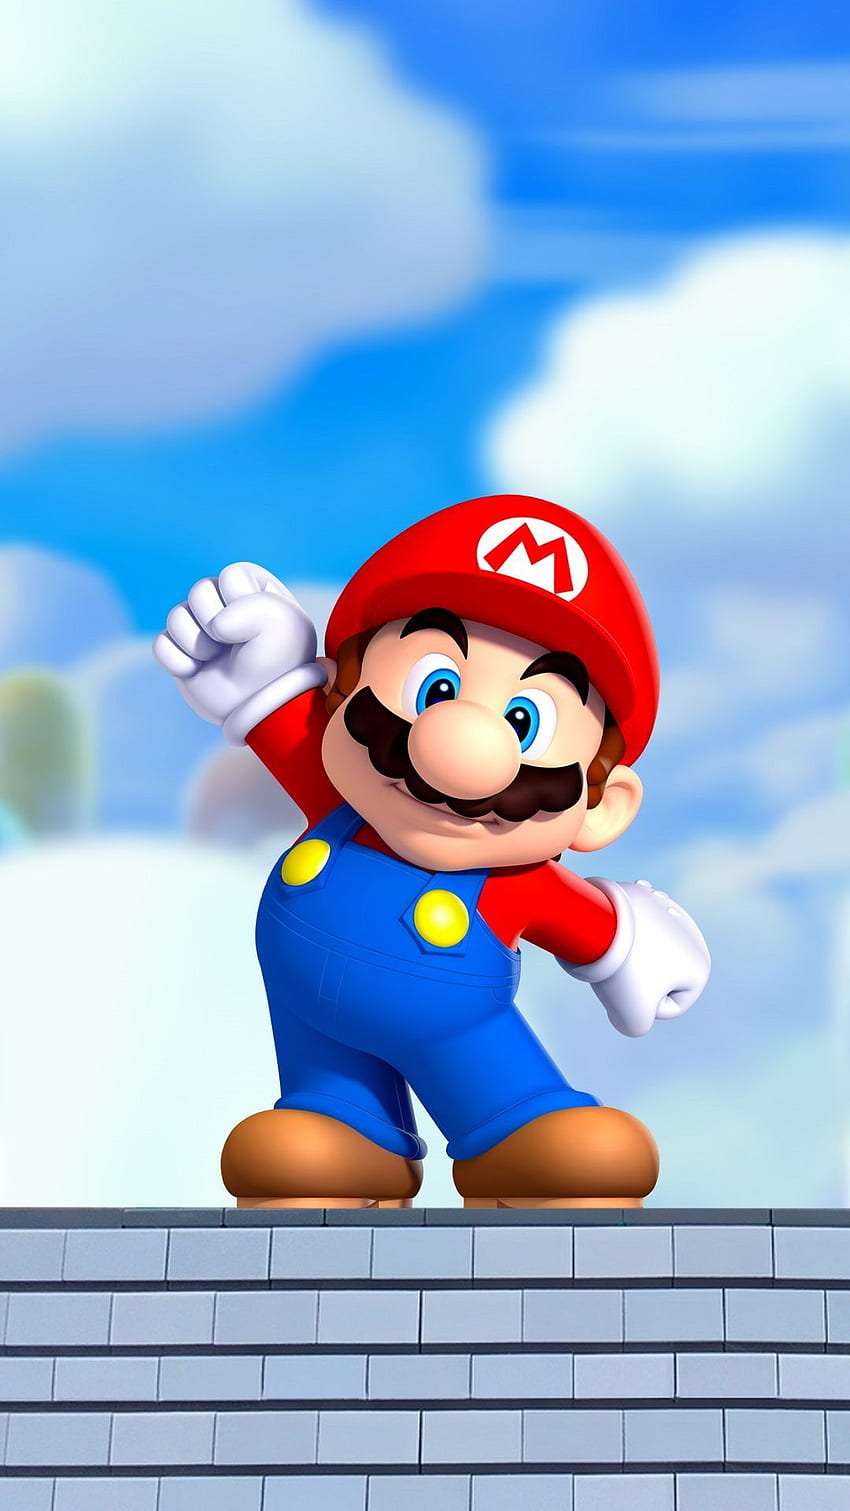 Súper Mario móvil. Super mario art, Mario bros, Super mario bros, Super Mario World fondo de pantalla del teléfono